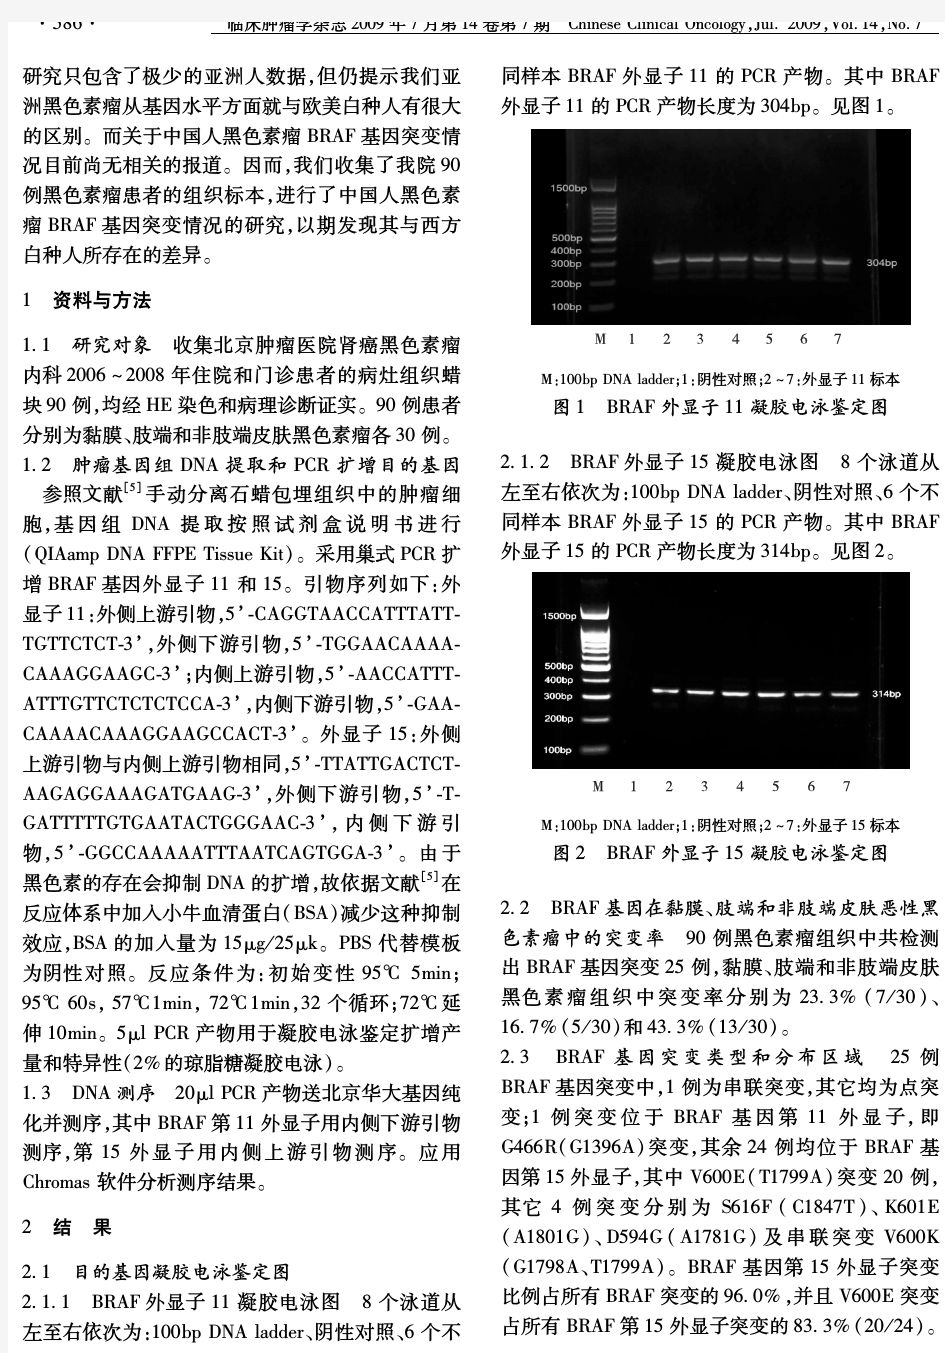 中国黑色素瘤患者BRAF基因突变分析